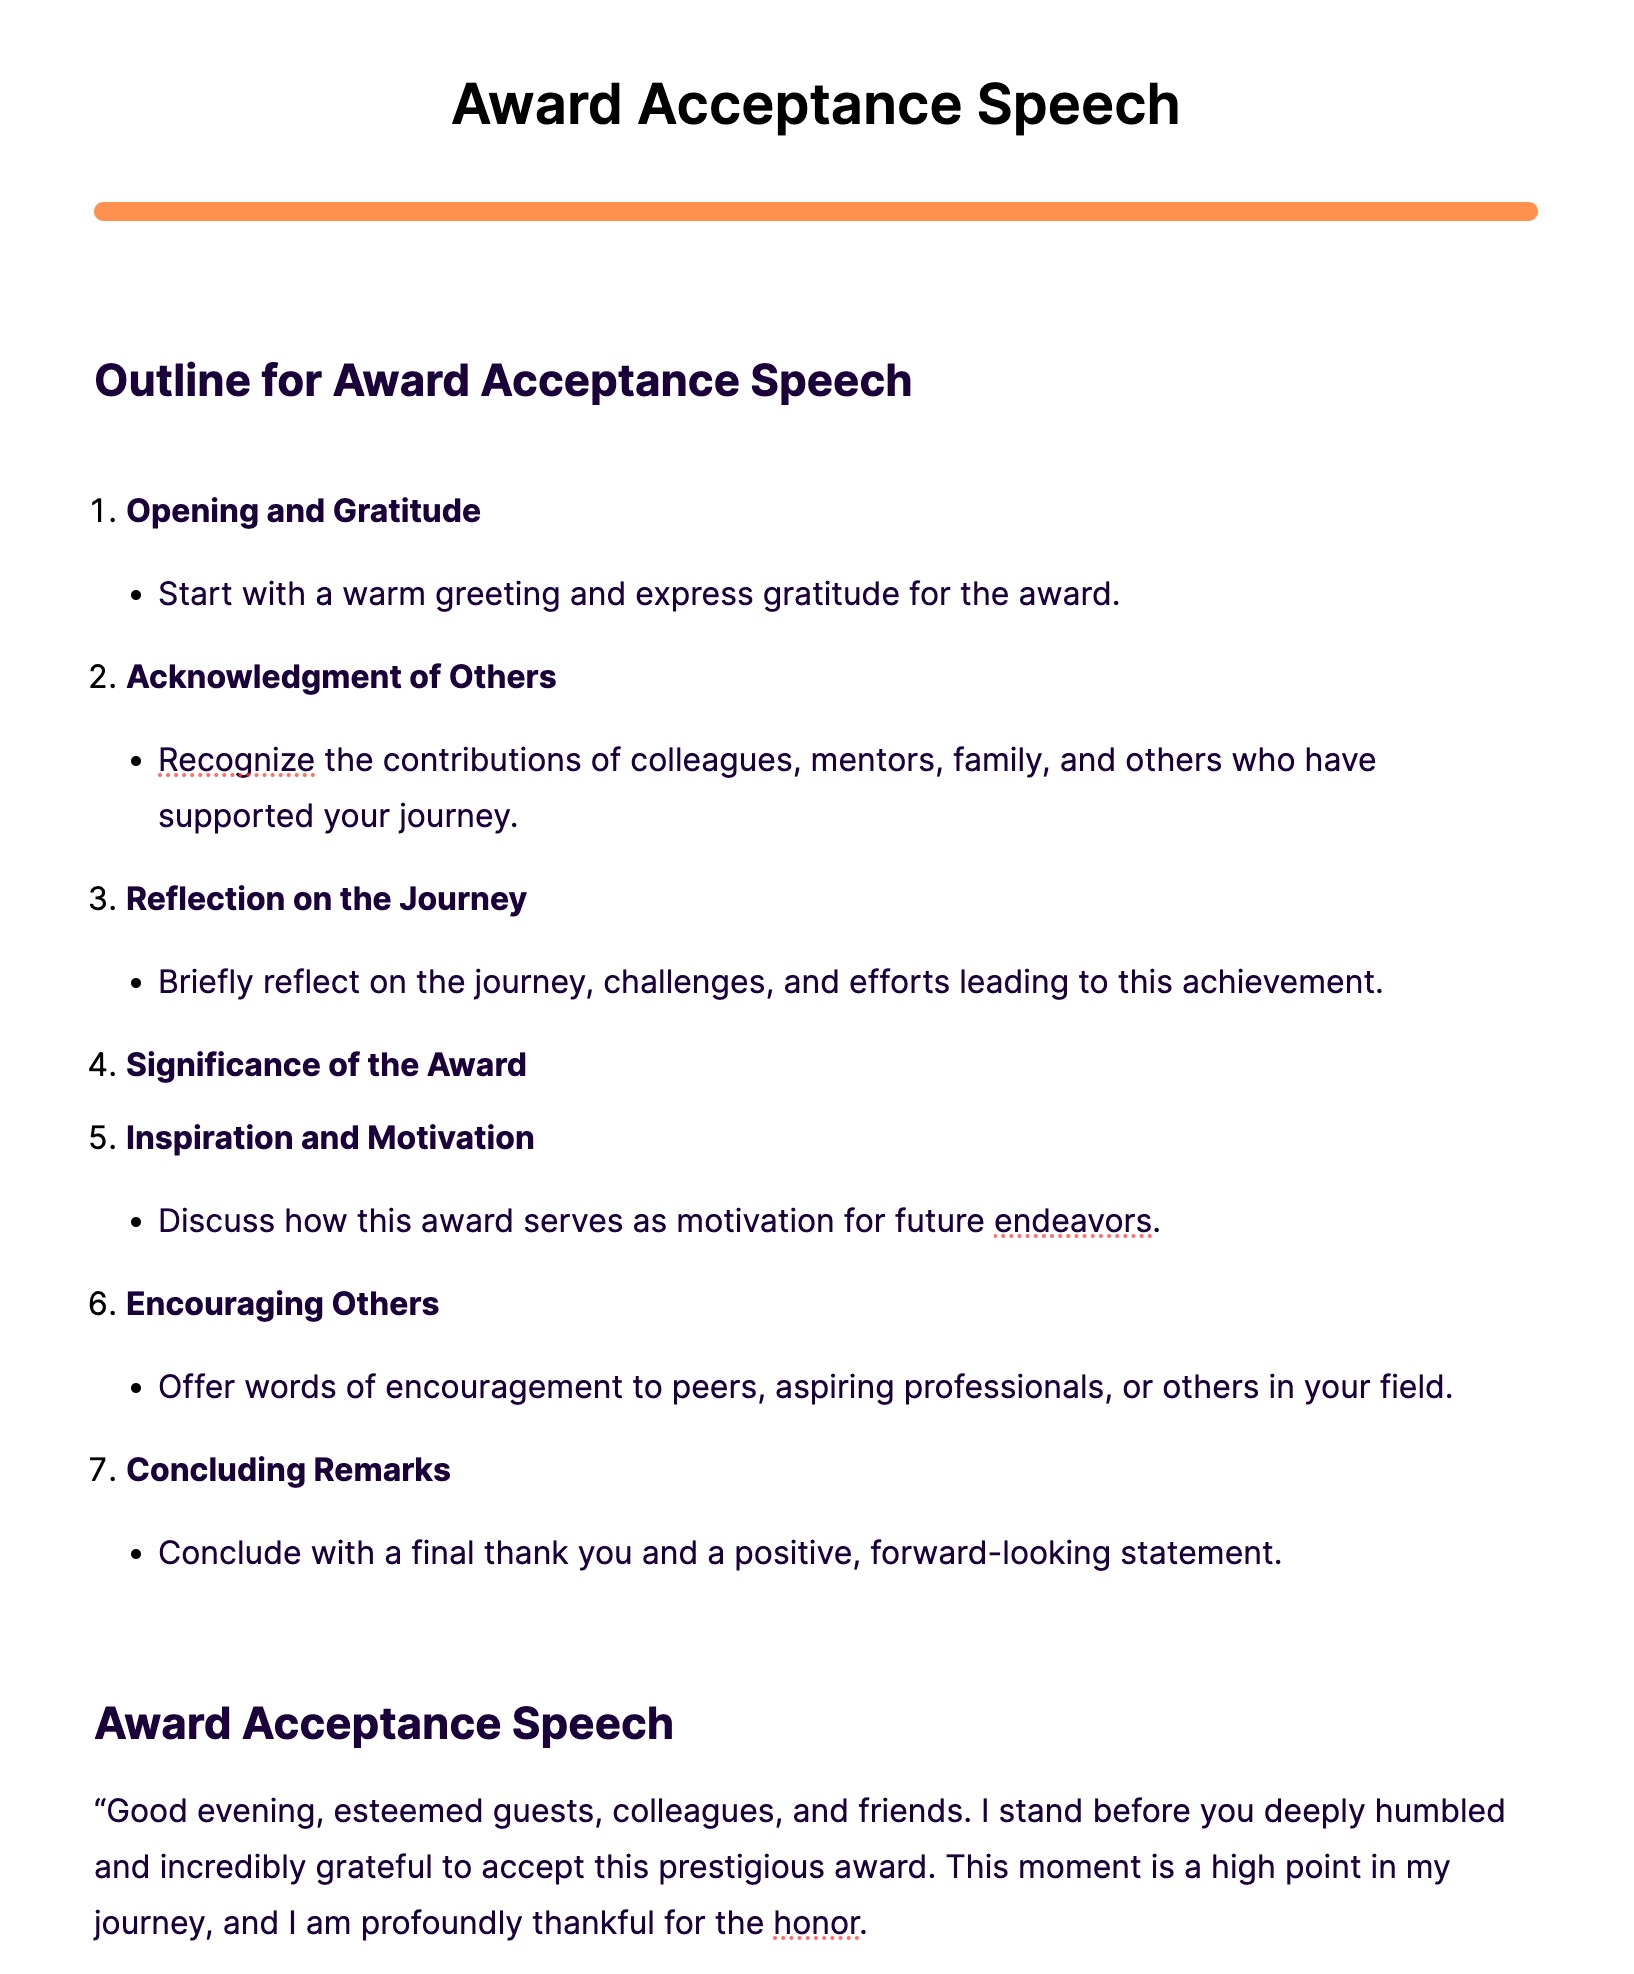 Award Acceptance Speech